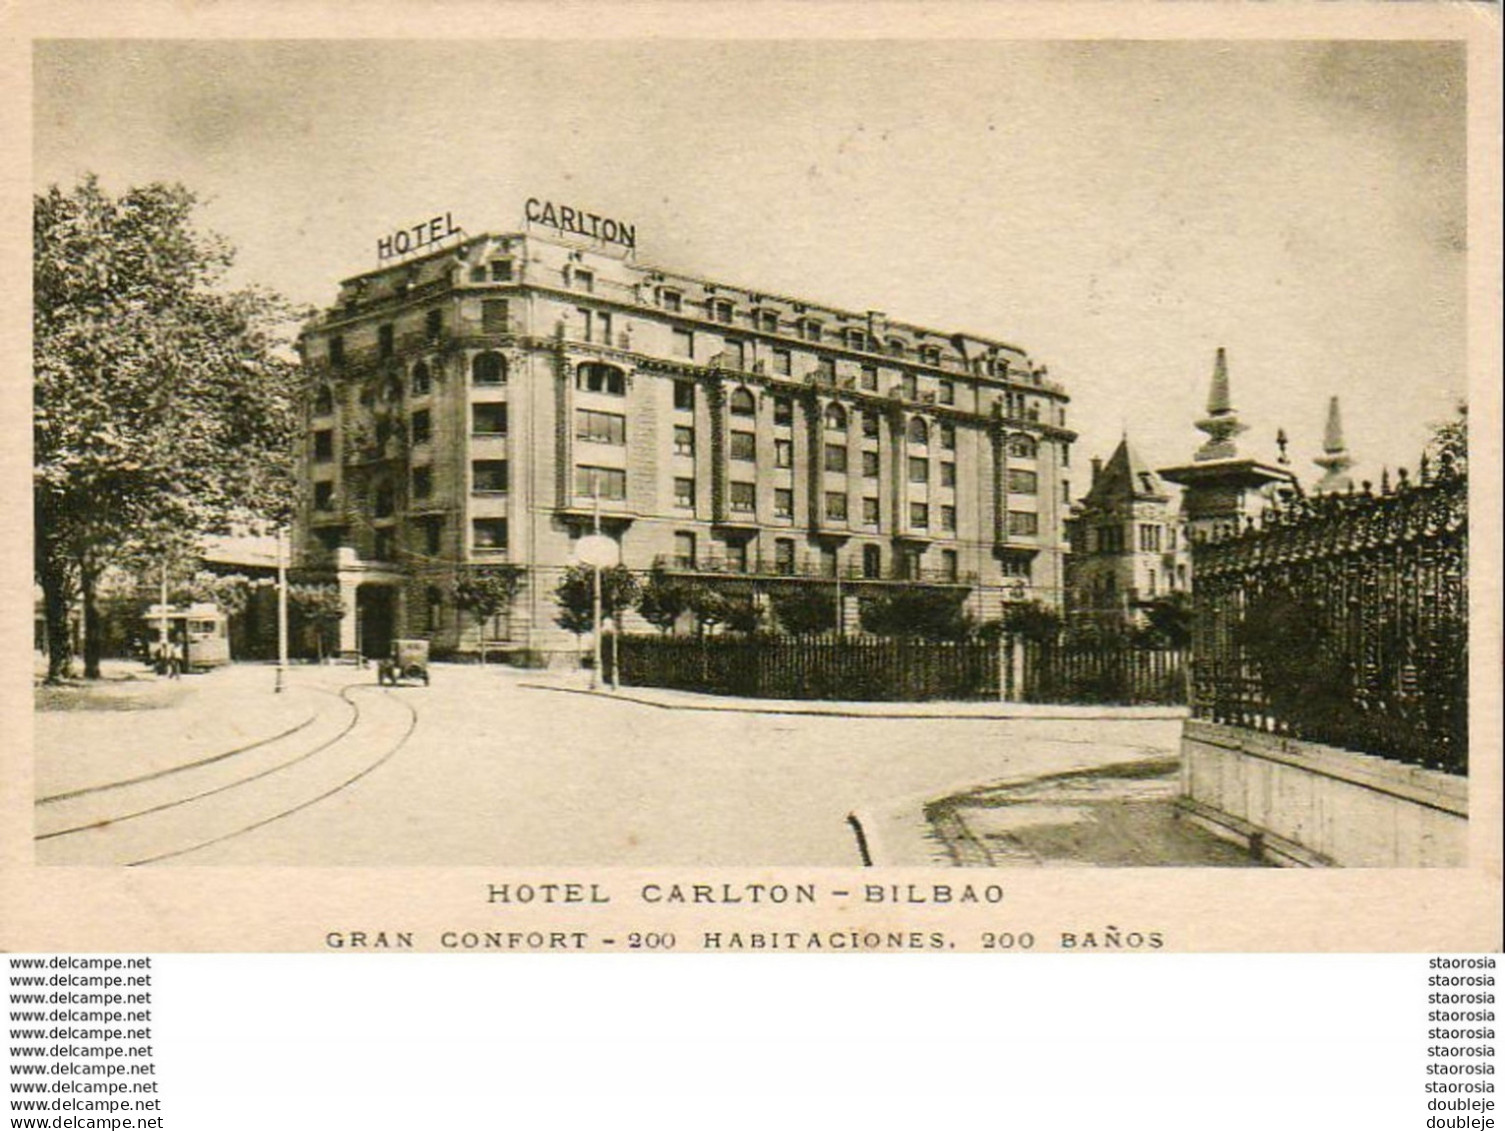 ESPAGNE  BILBAO VvIZCAYA)  HOTEL CARLTON - Vizcaya (Bilbao)